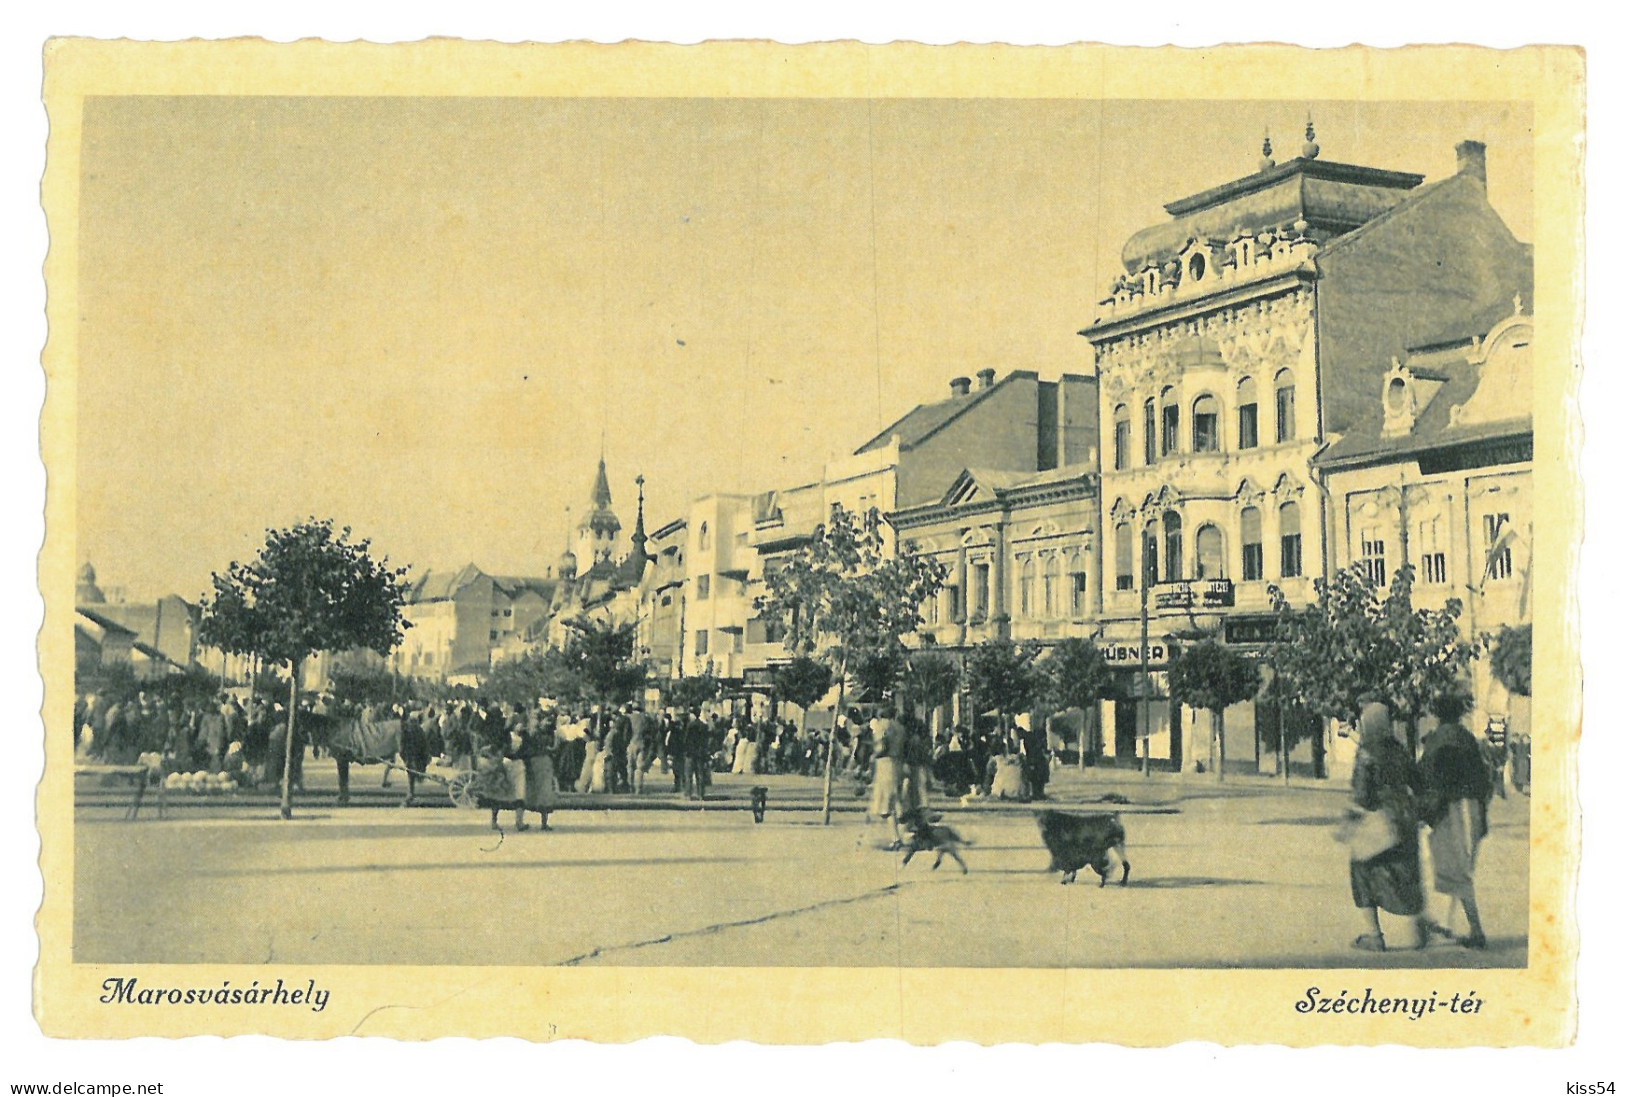 RO 40 - 17922 TARGU-MURES, Market, Romania - Old Postcard, Real PHOTO - Unused - Roemenië